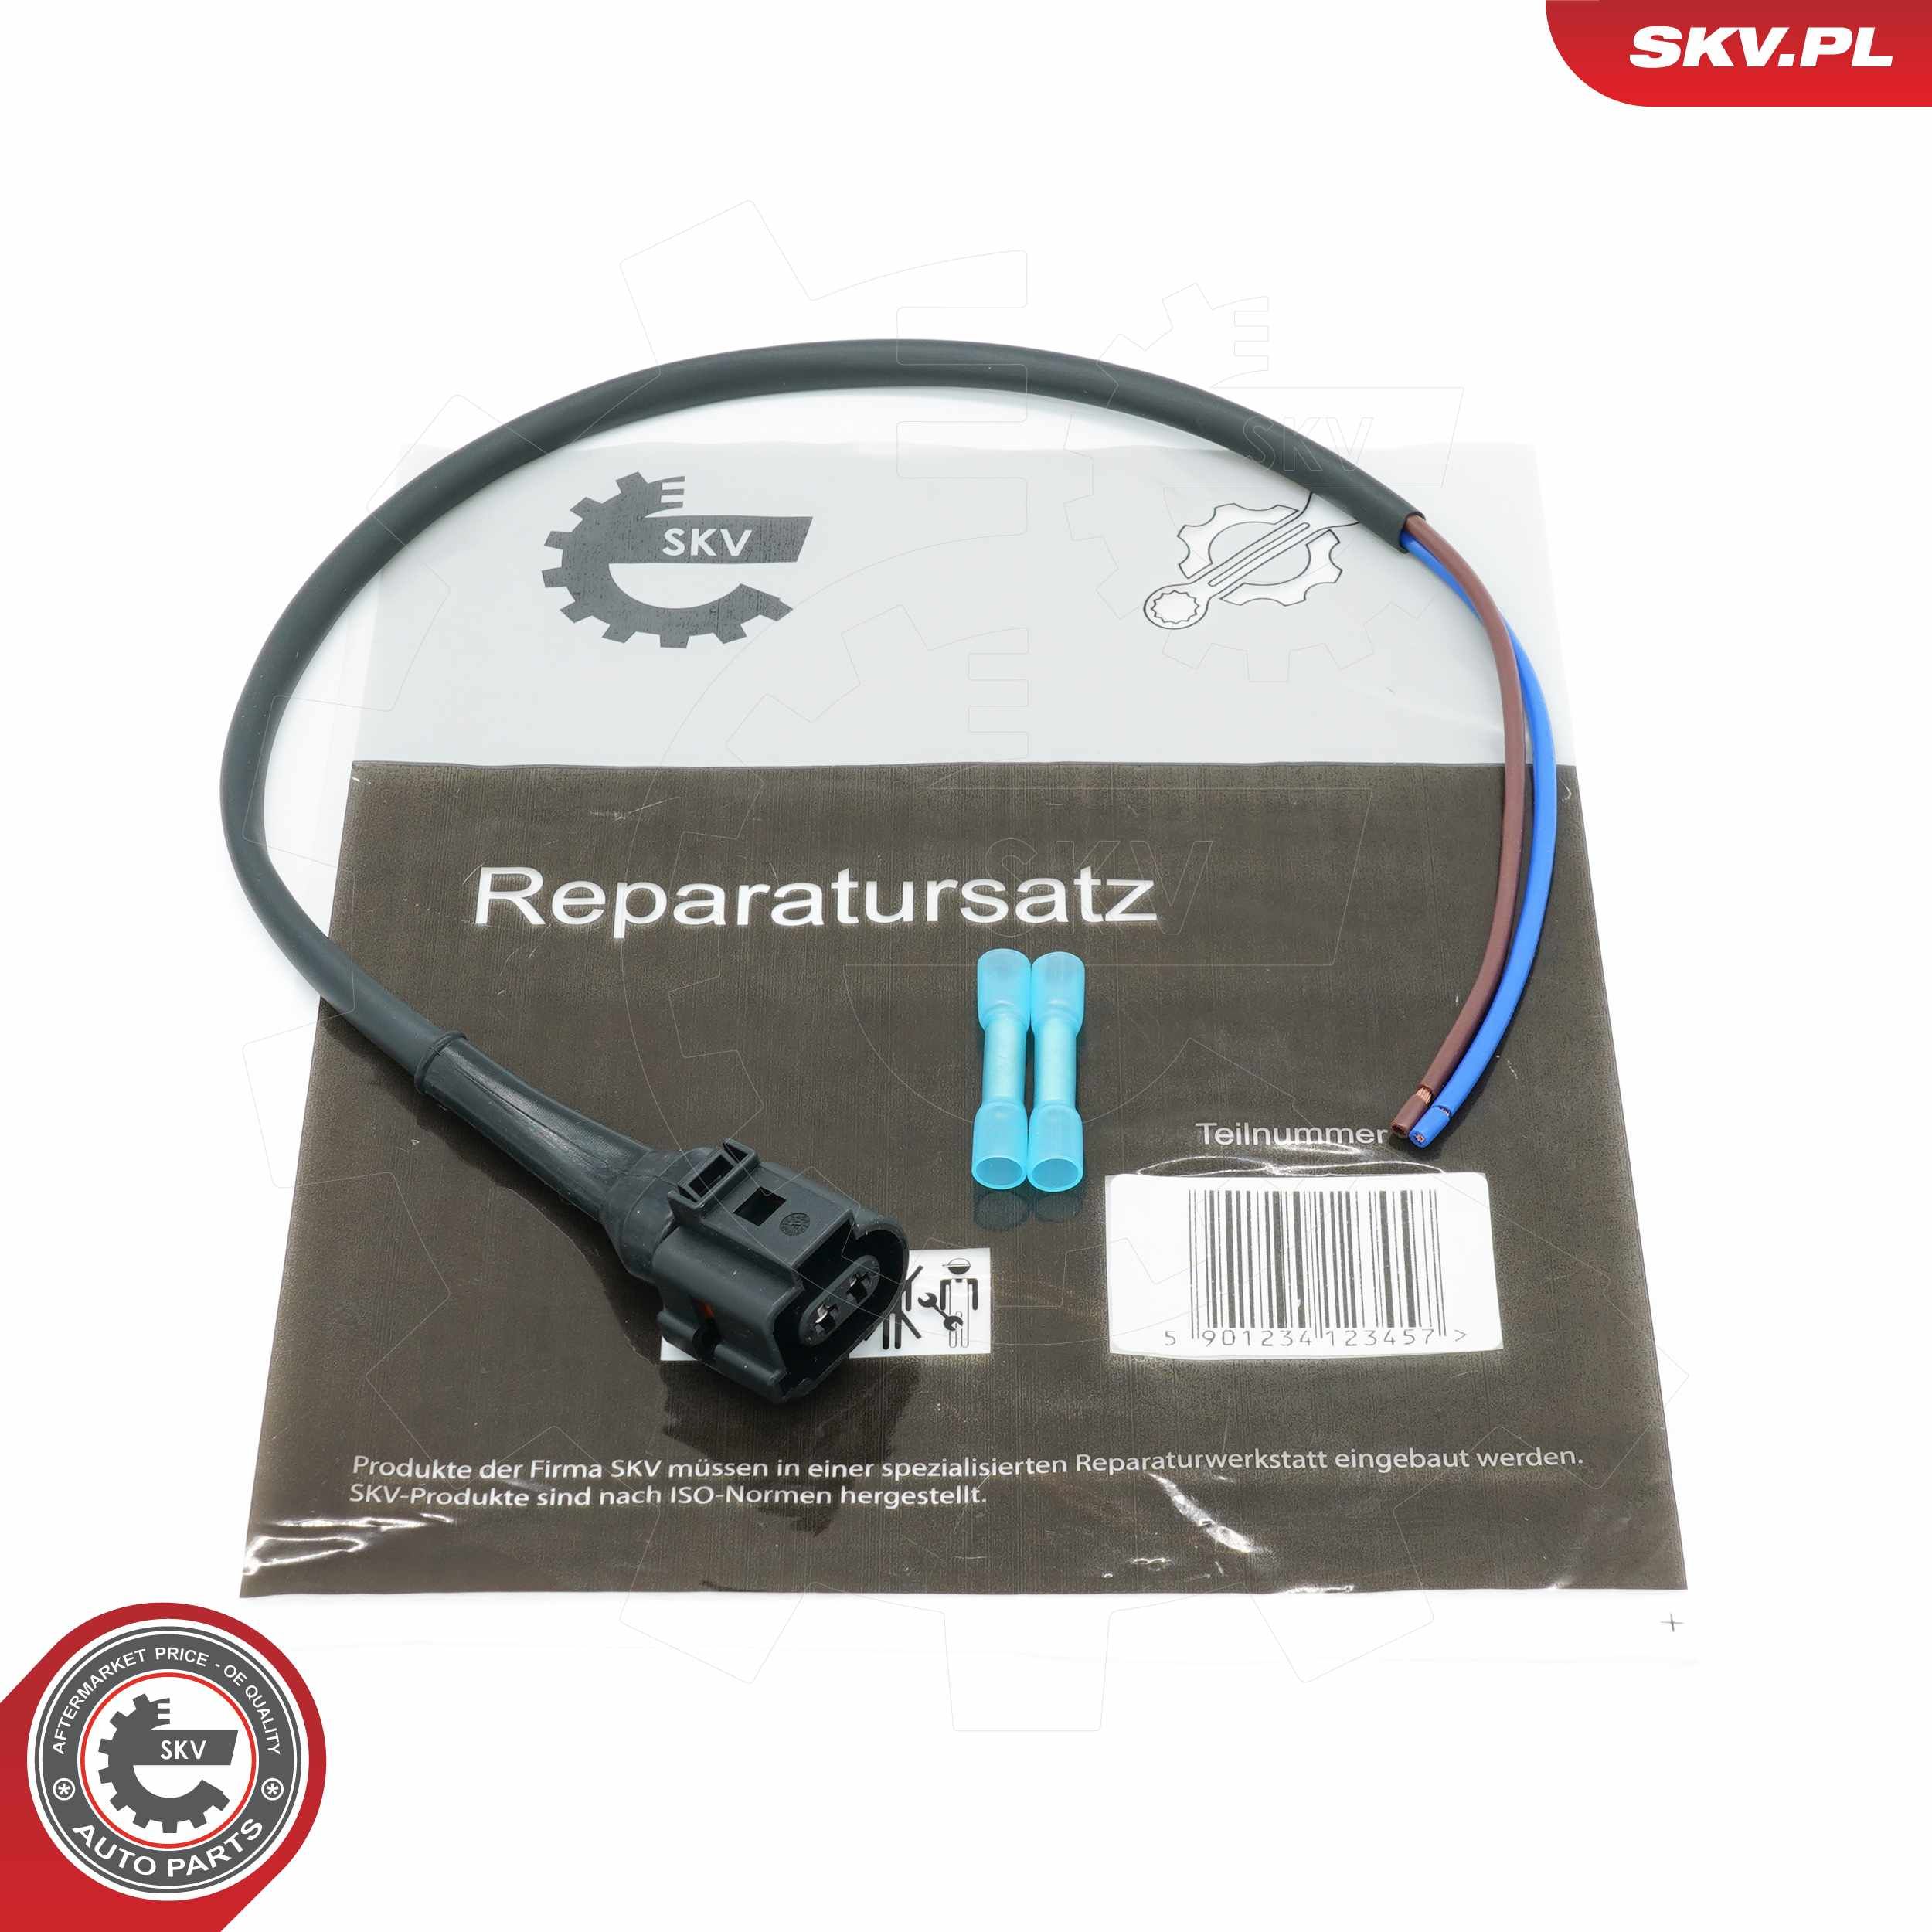 Cable Repair Set, parking brake actuator 53SKV133